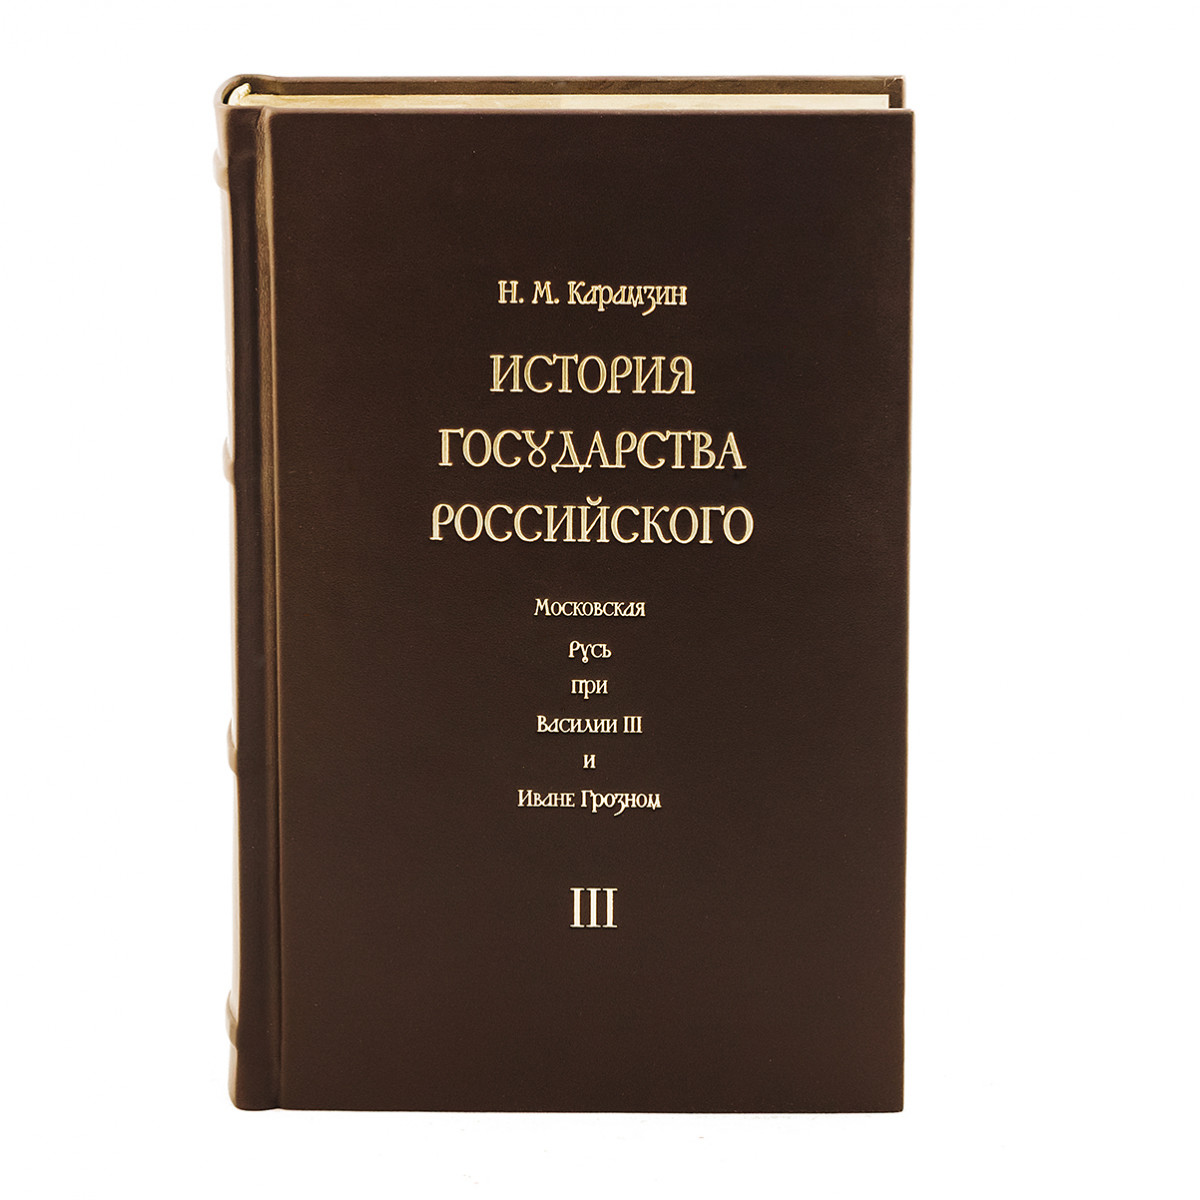 Карамзин. История России в 4-х томах